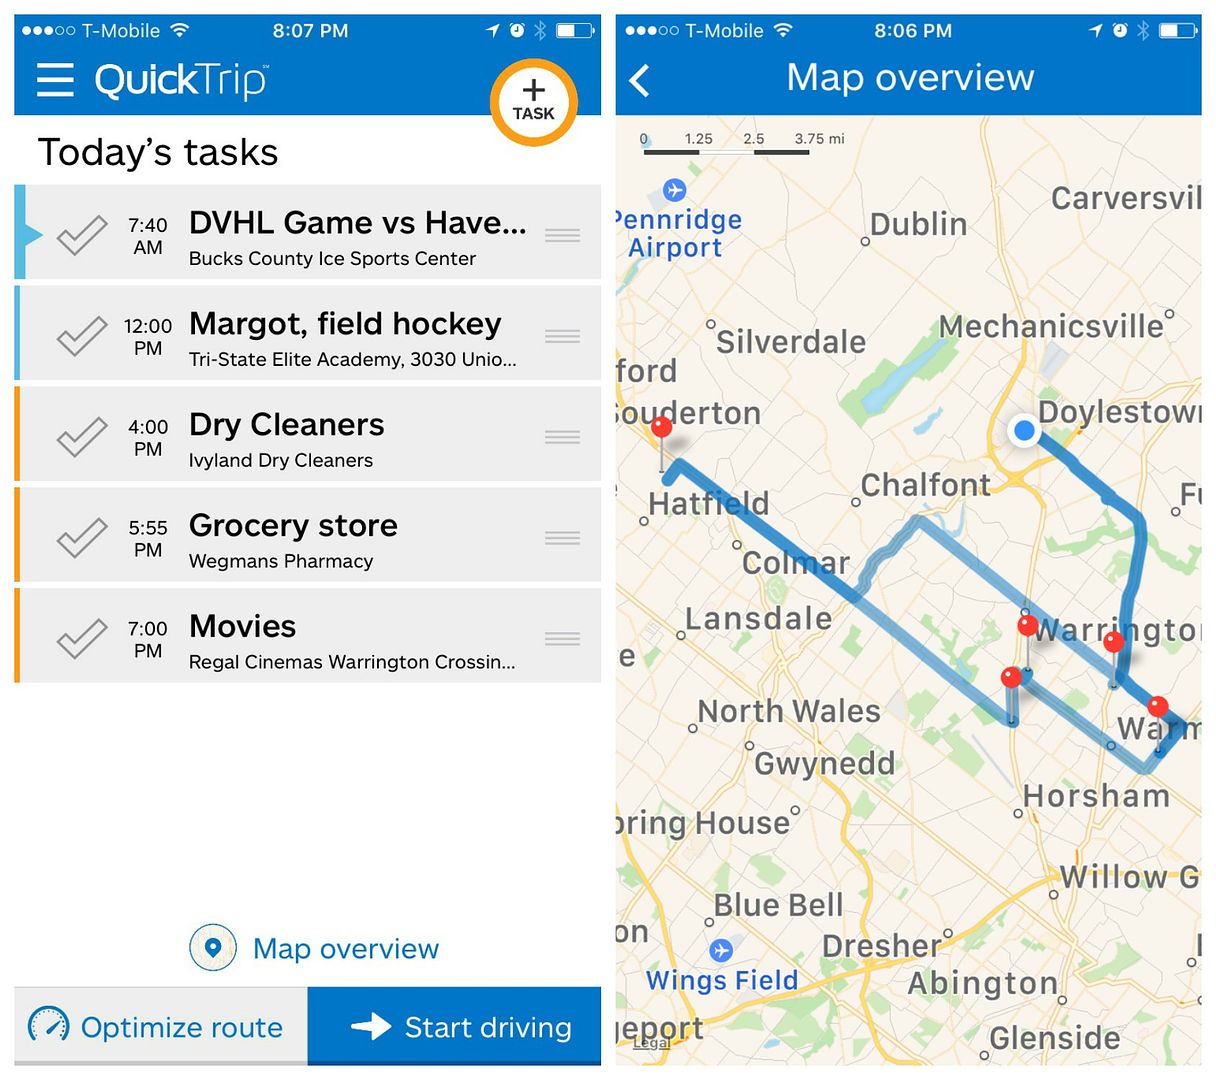  L'application QuickTrip optimise votre liste de tâches et vous propose les itinéraires les plus intelligents pour vous faire gagner du temps